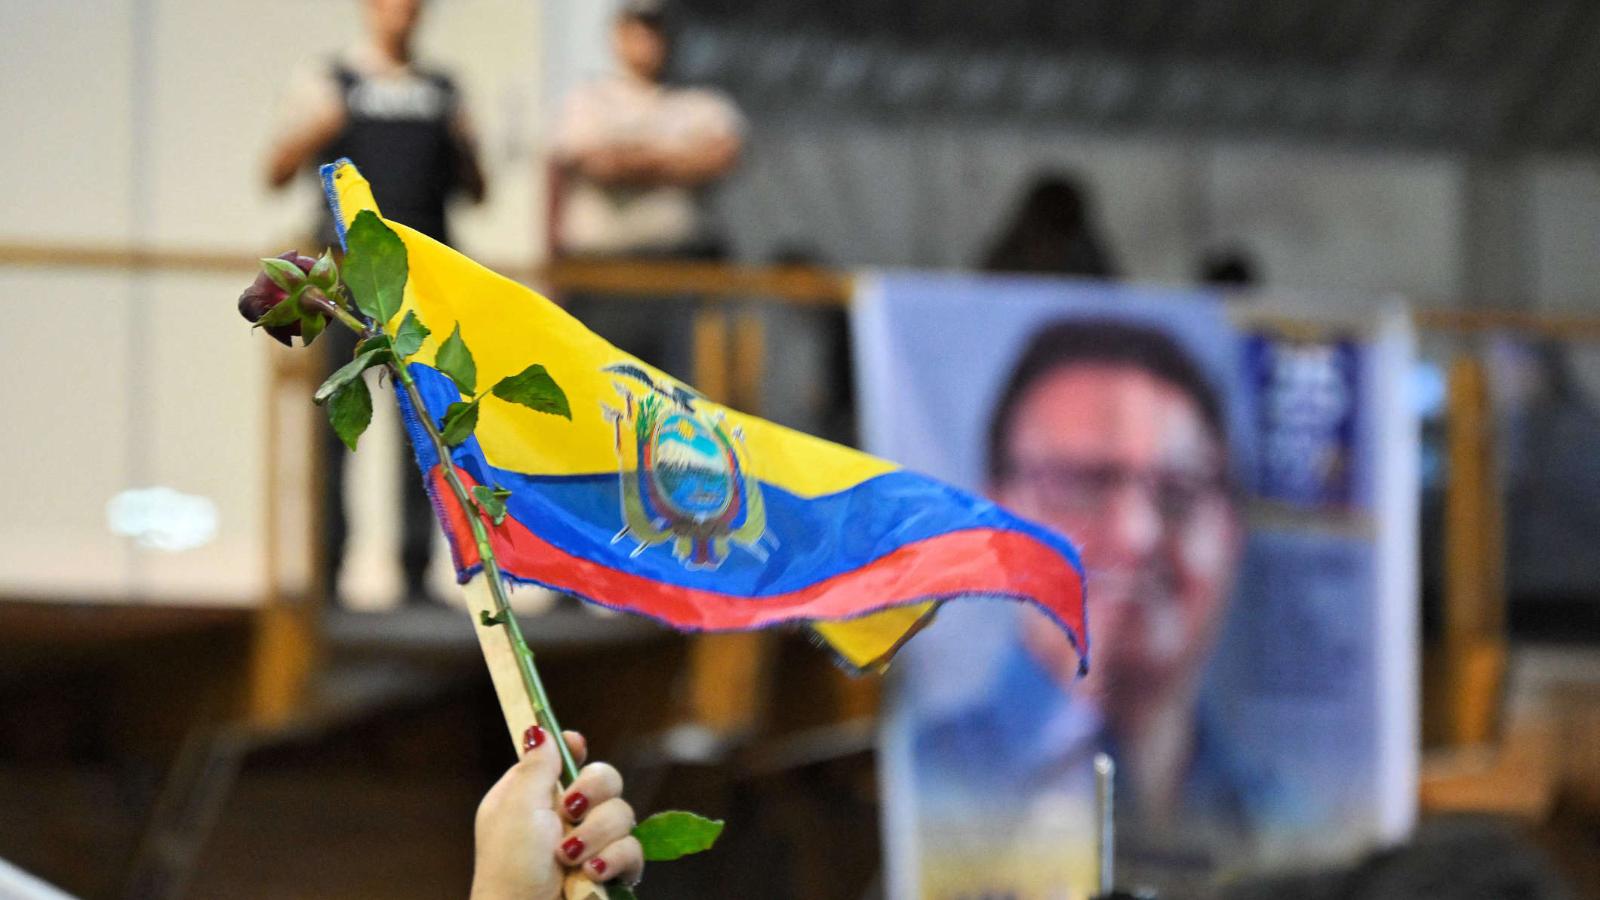 Voto emocional o racional?: qué esperar de las elecciones en Ecuador | Video | CNN